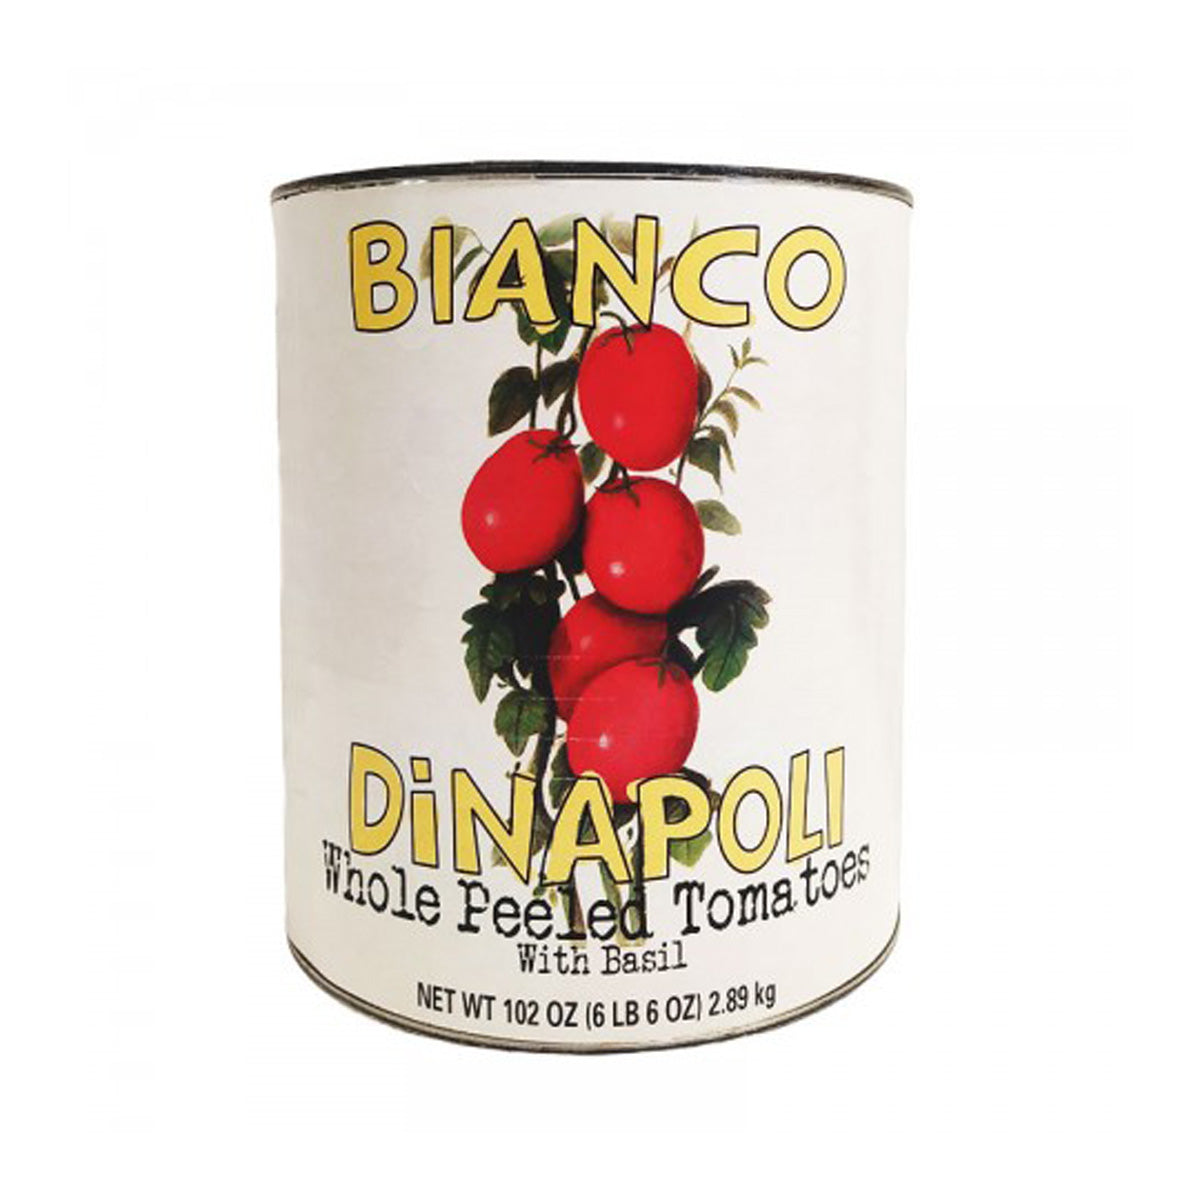 Bianco Dinapoli Whole Peeled Tomatoes with Basil 10oz 6ct